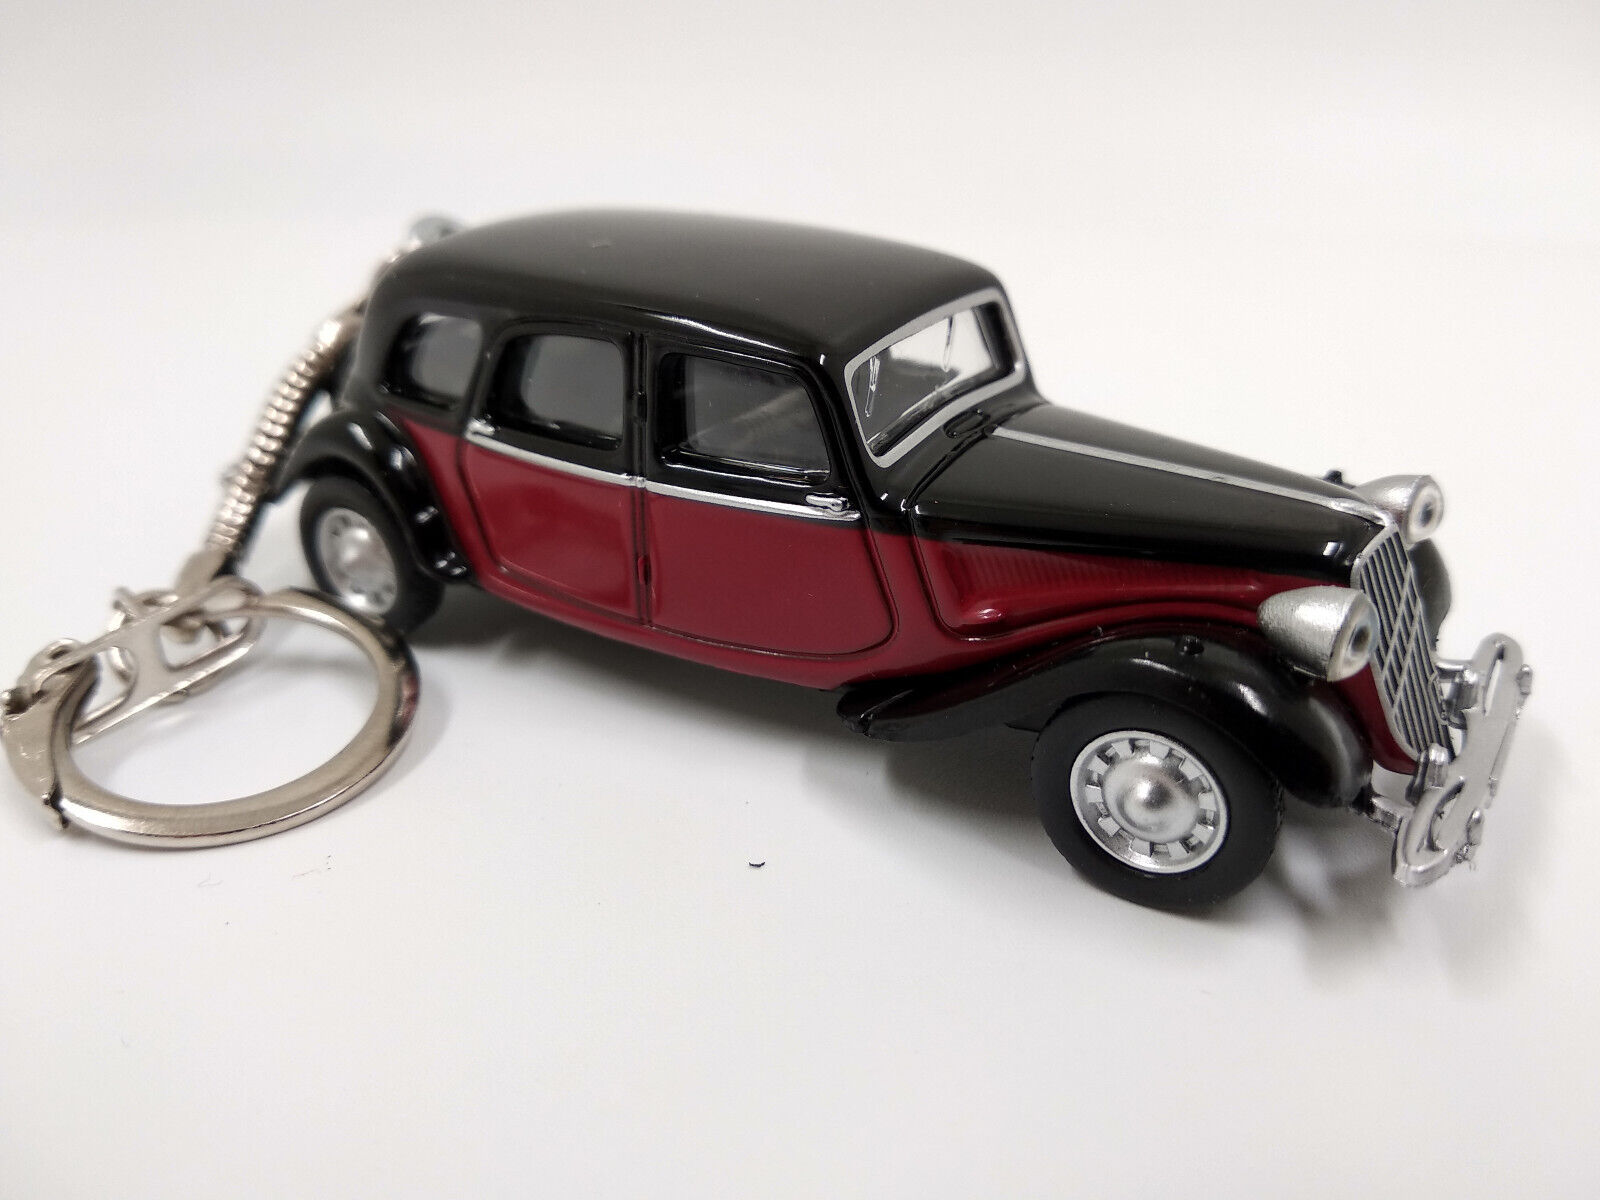 Porte clé Citroën Traction 1939 rouge et noir en métal idée cadeau